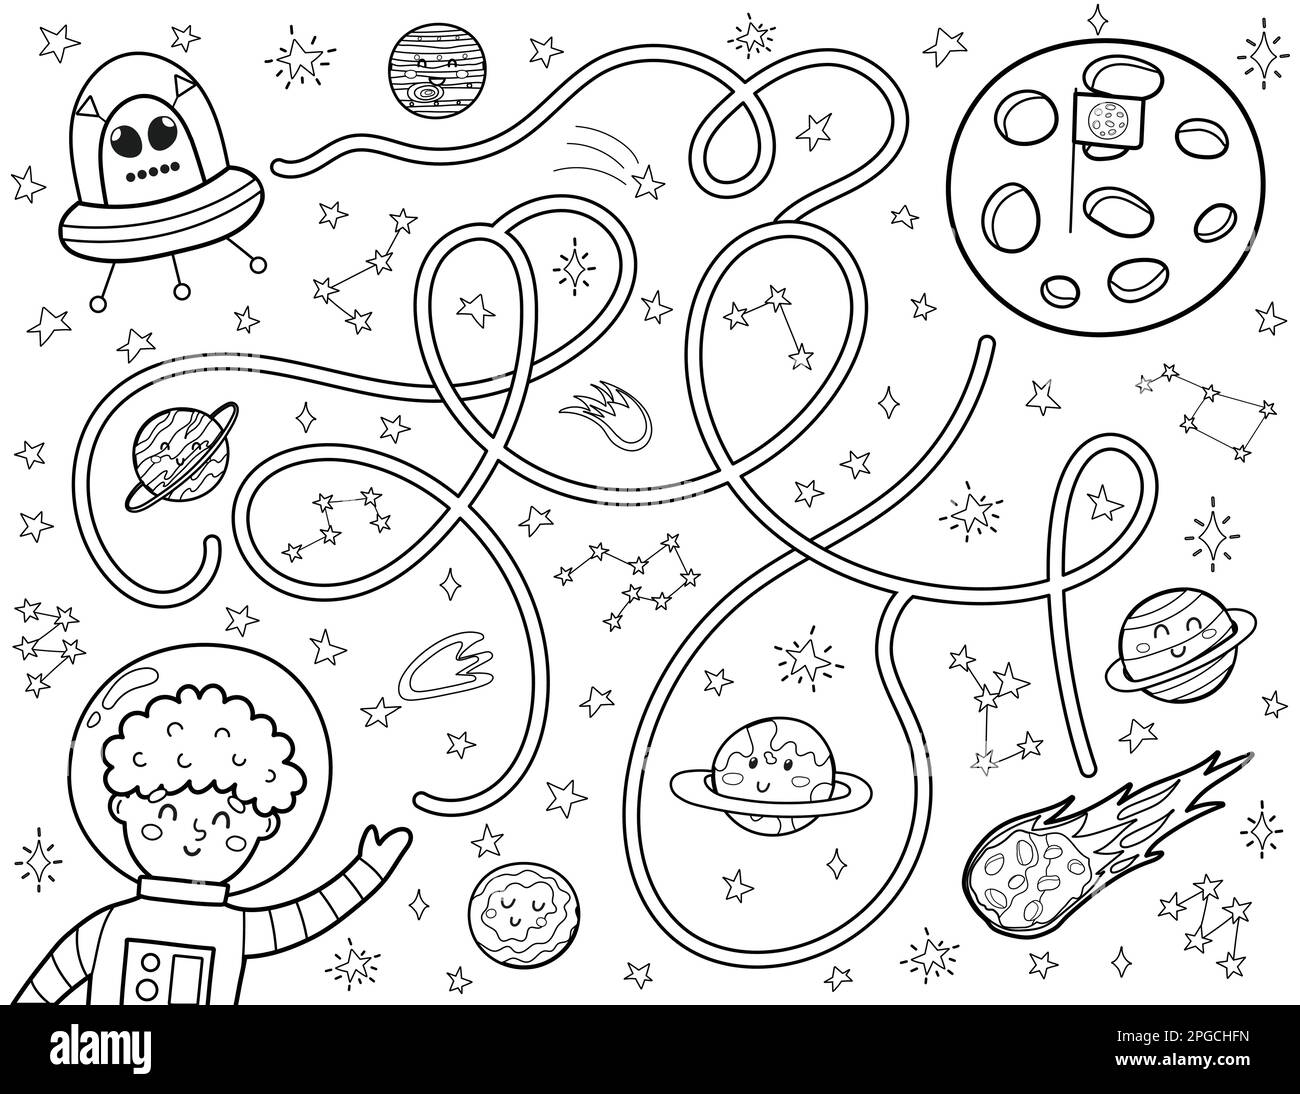 Schwarz-Weiß-Labyrinth für Kinder. Hilf einem süßen Astronauten, den Weg zum Mond zu finden Stock Vektor